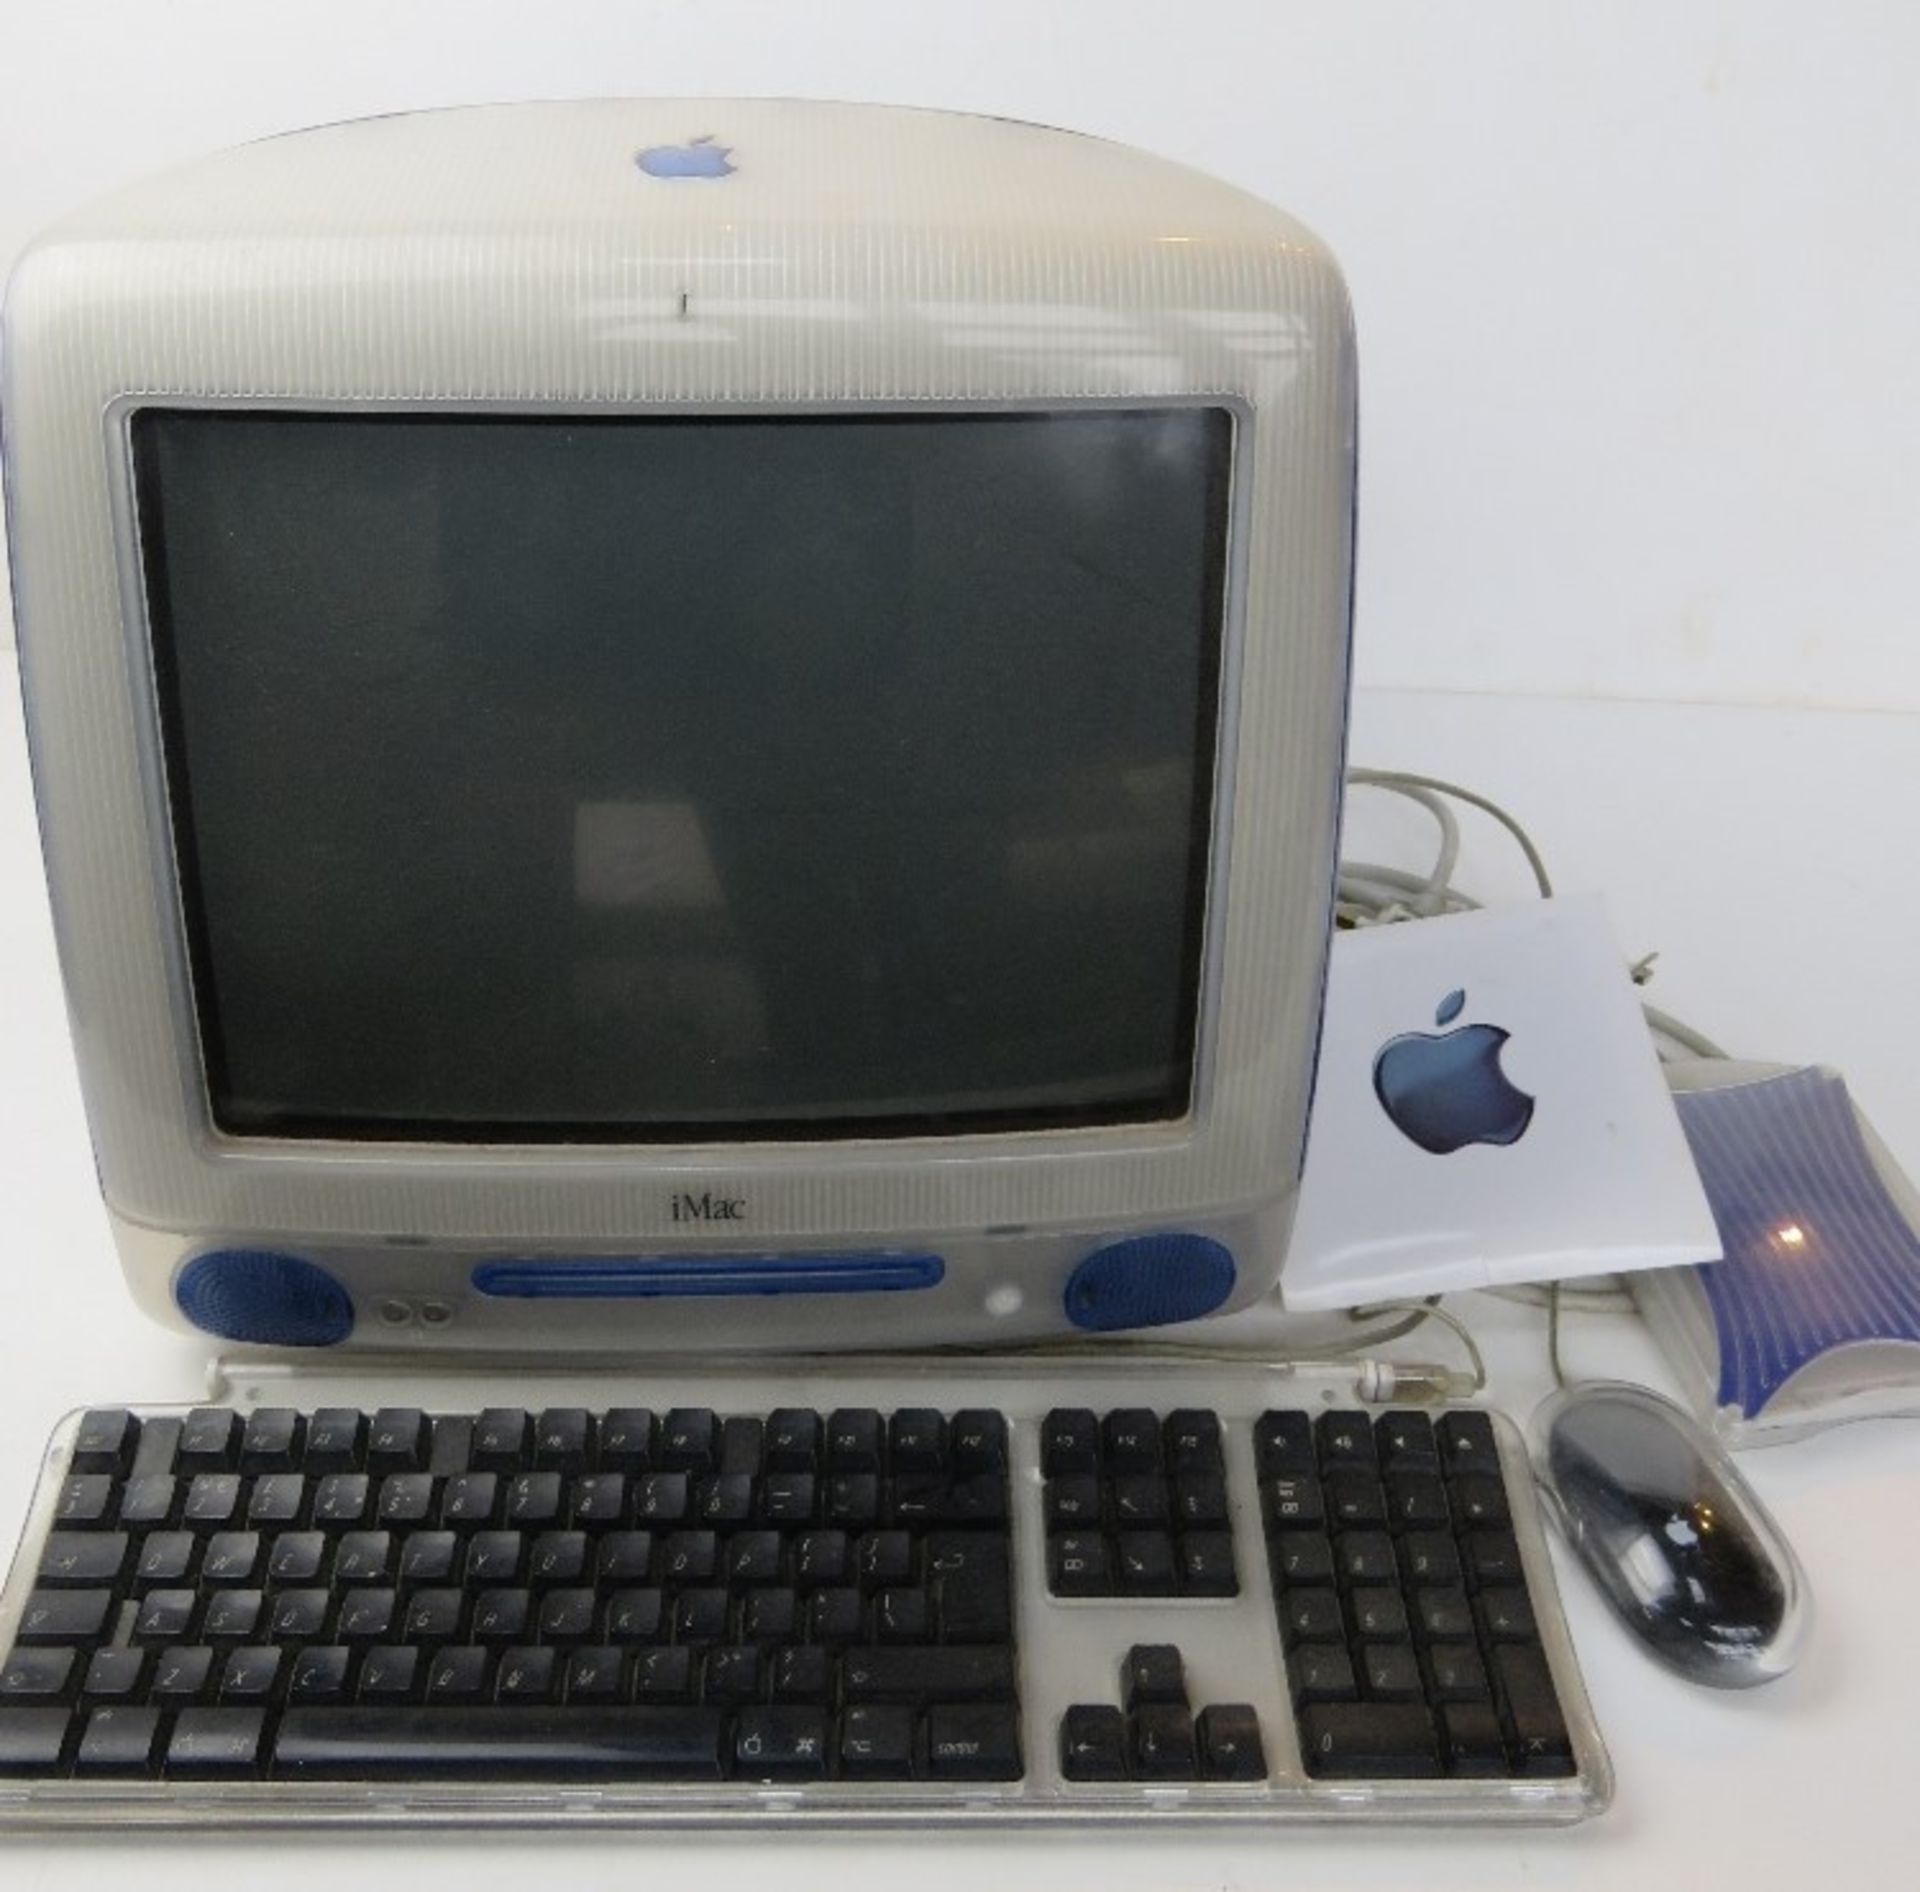 An Apple iMac desktop computer.